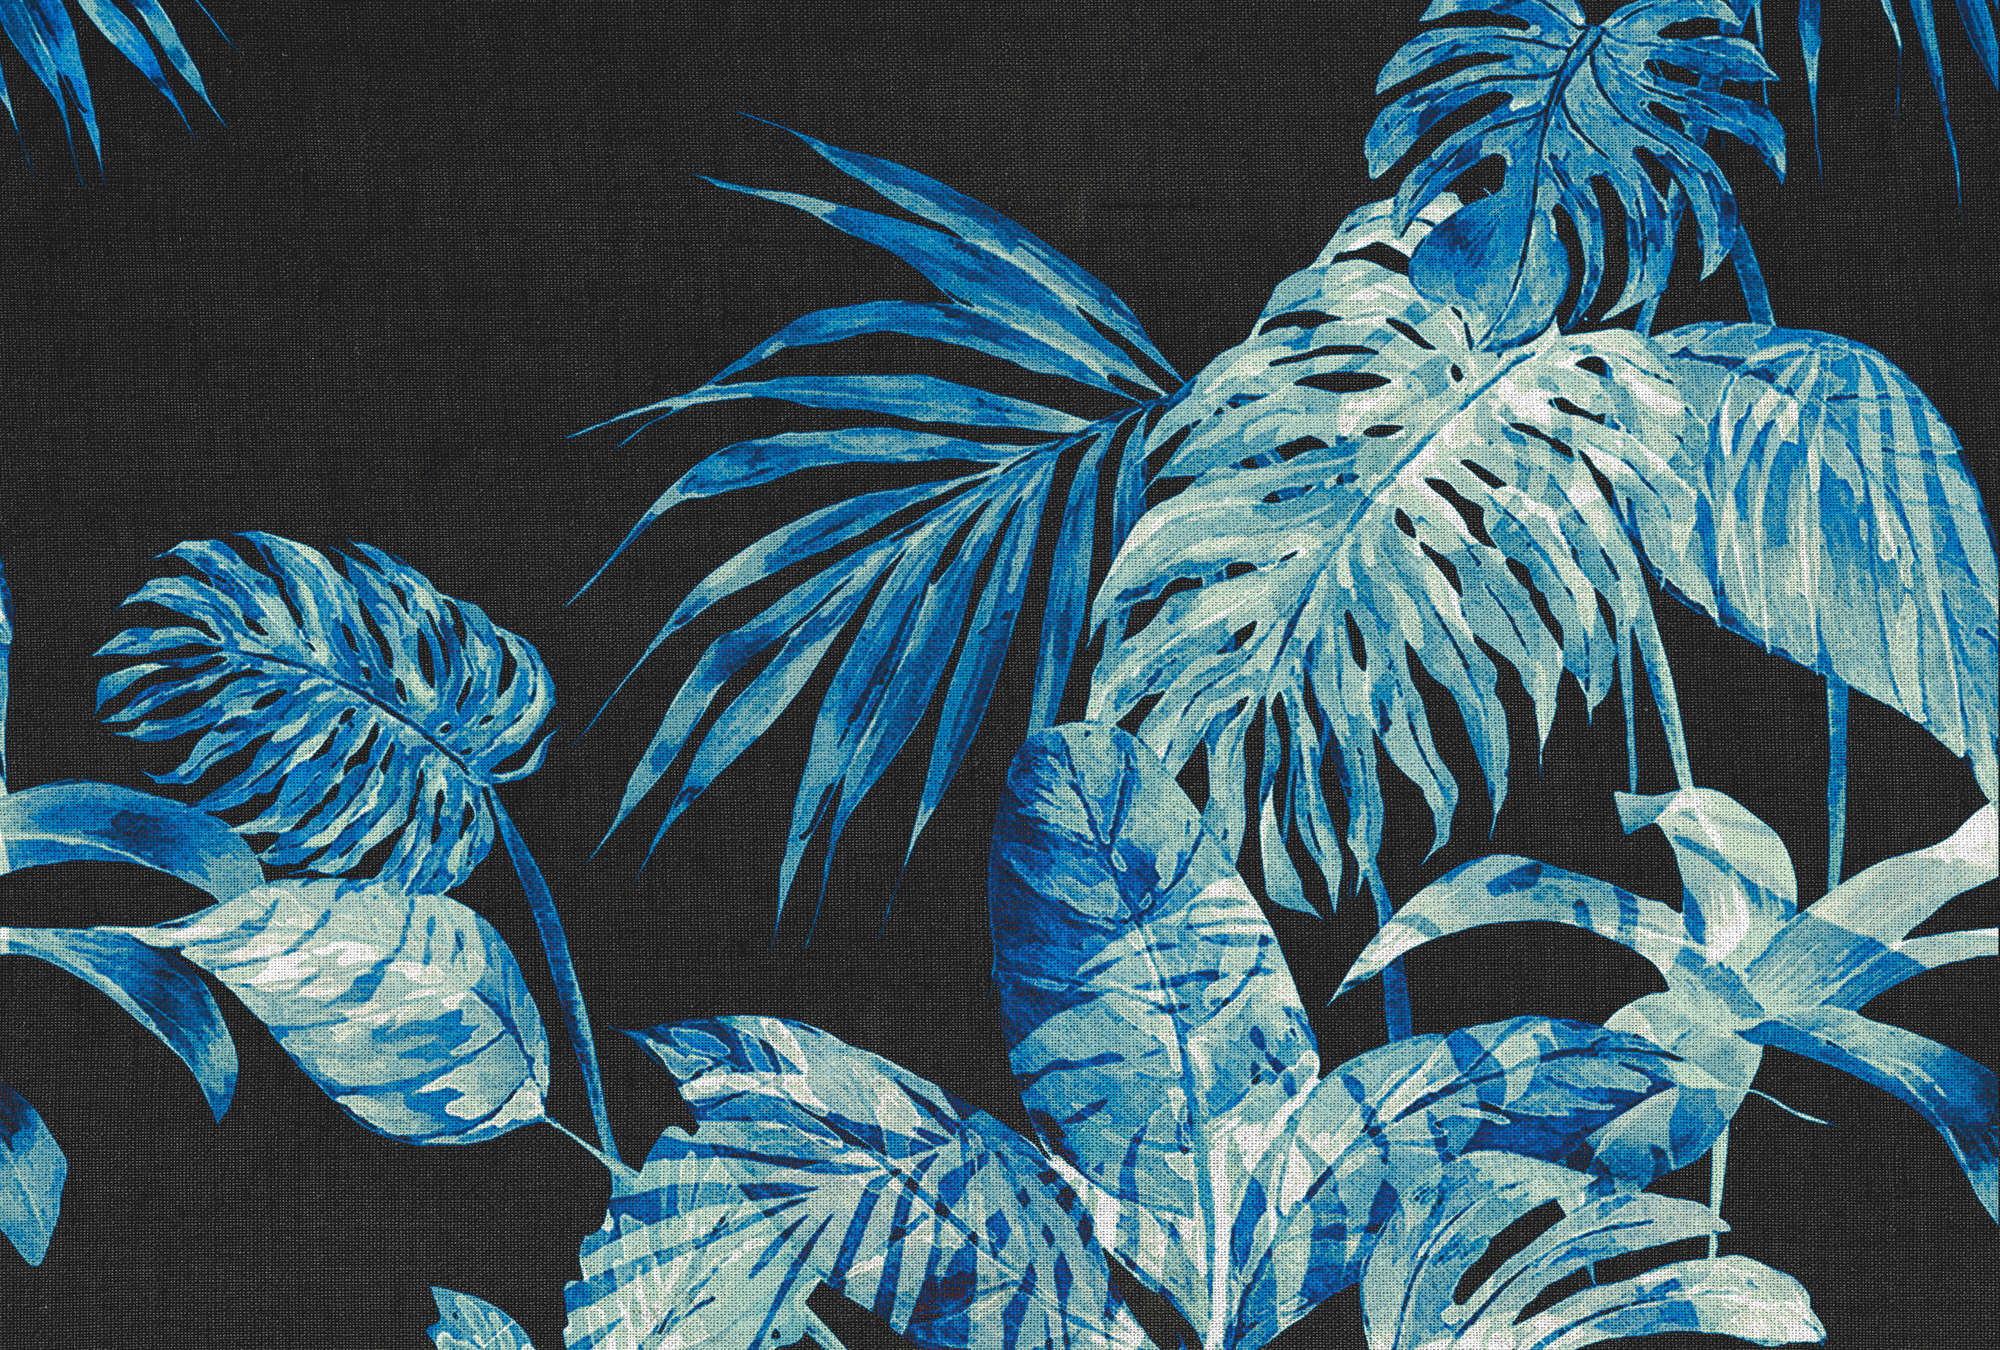             Bladeren Muurschildering Aquarel Stijl & Zwarte Achtergrond - Blauw, Zwart, Wit
        